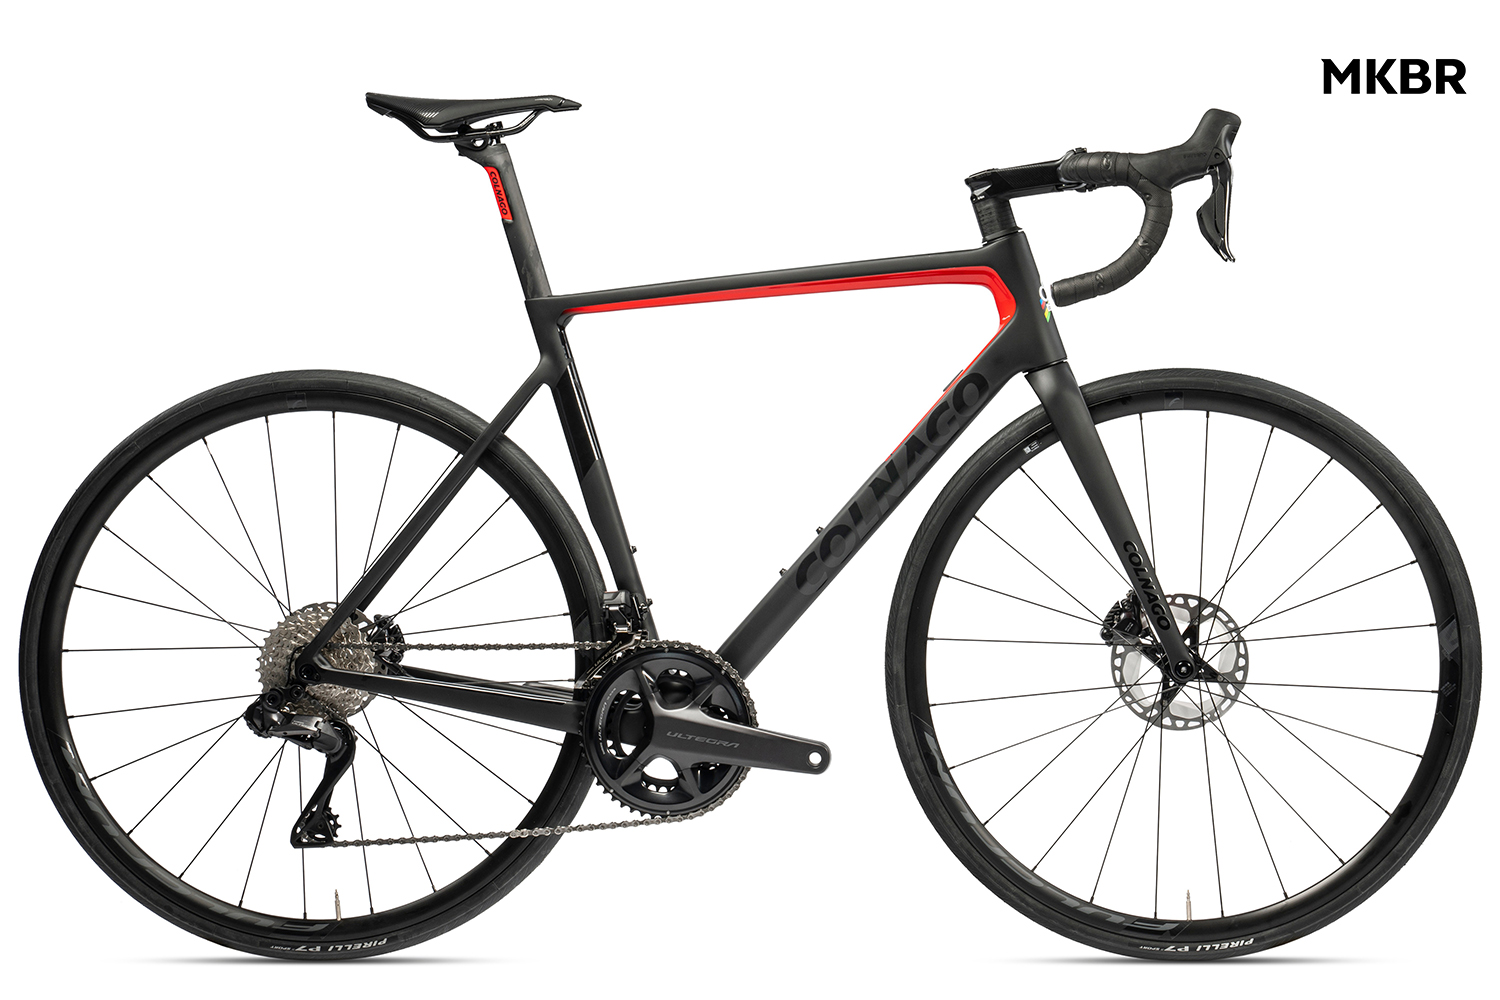  Отзывы о Шоссейном велосипеде Colnago V3 Disc 105 Di2 12v R600 MKBR 2022